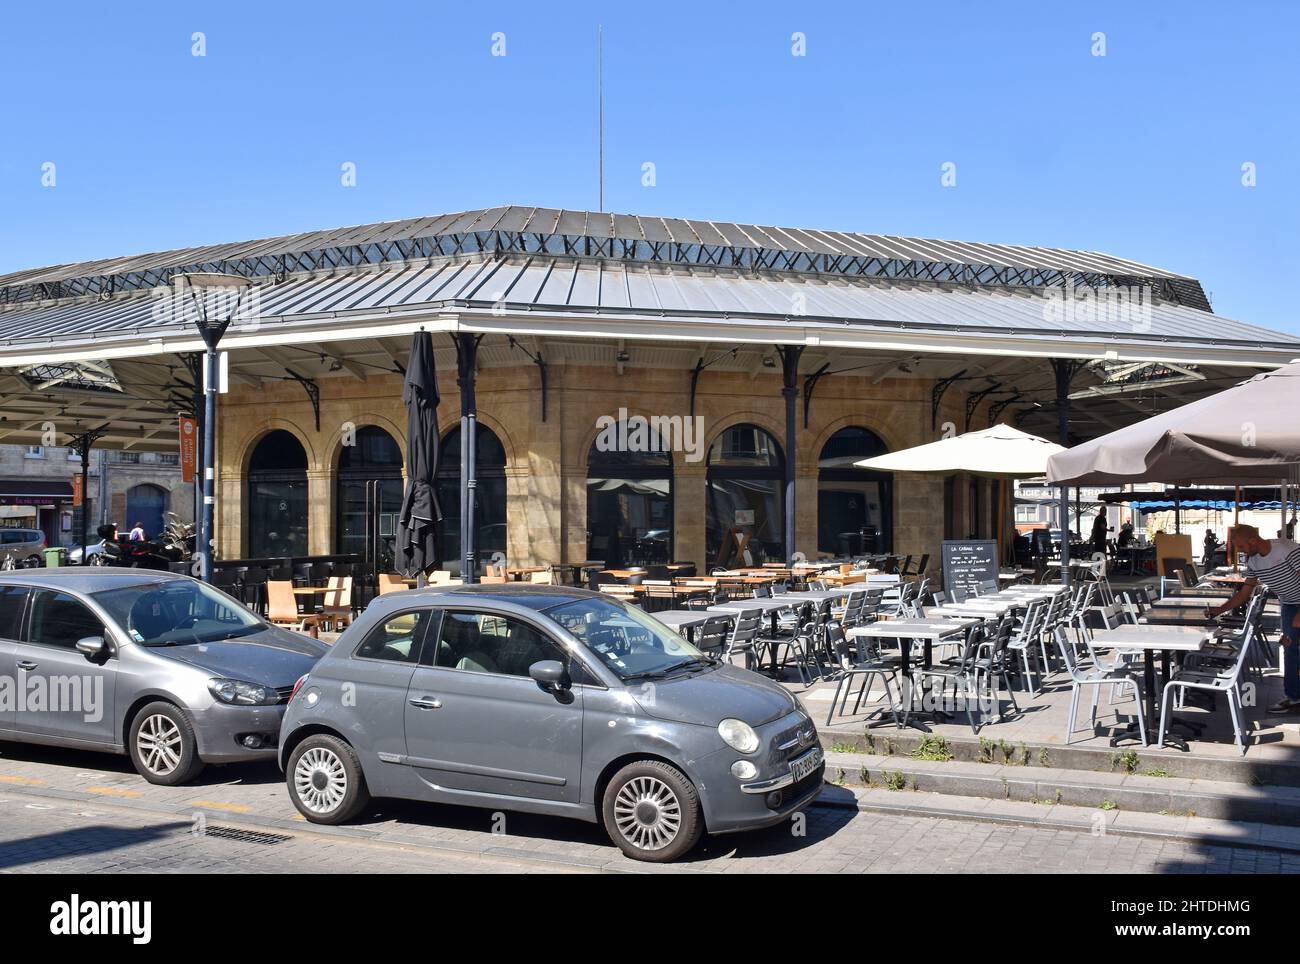 L'elegante mercato coperto ottagonale in ferro incorniciato nel quartiere Chartrons di Bordeaux, Francia, costruito nel 1869, ora trasformato in ristoranti e bar Foto Stock